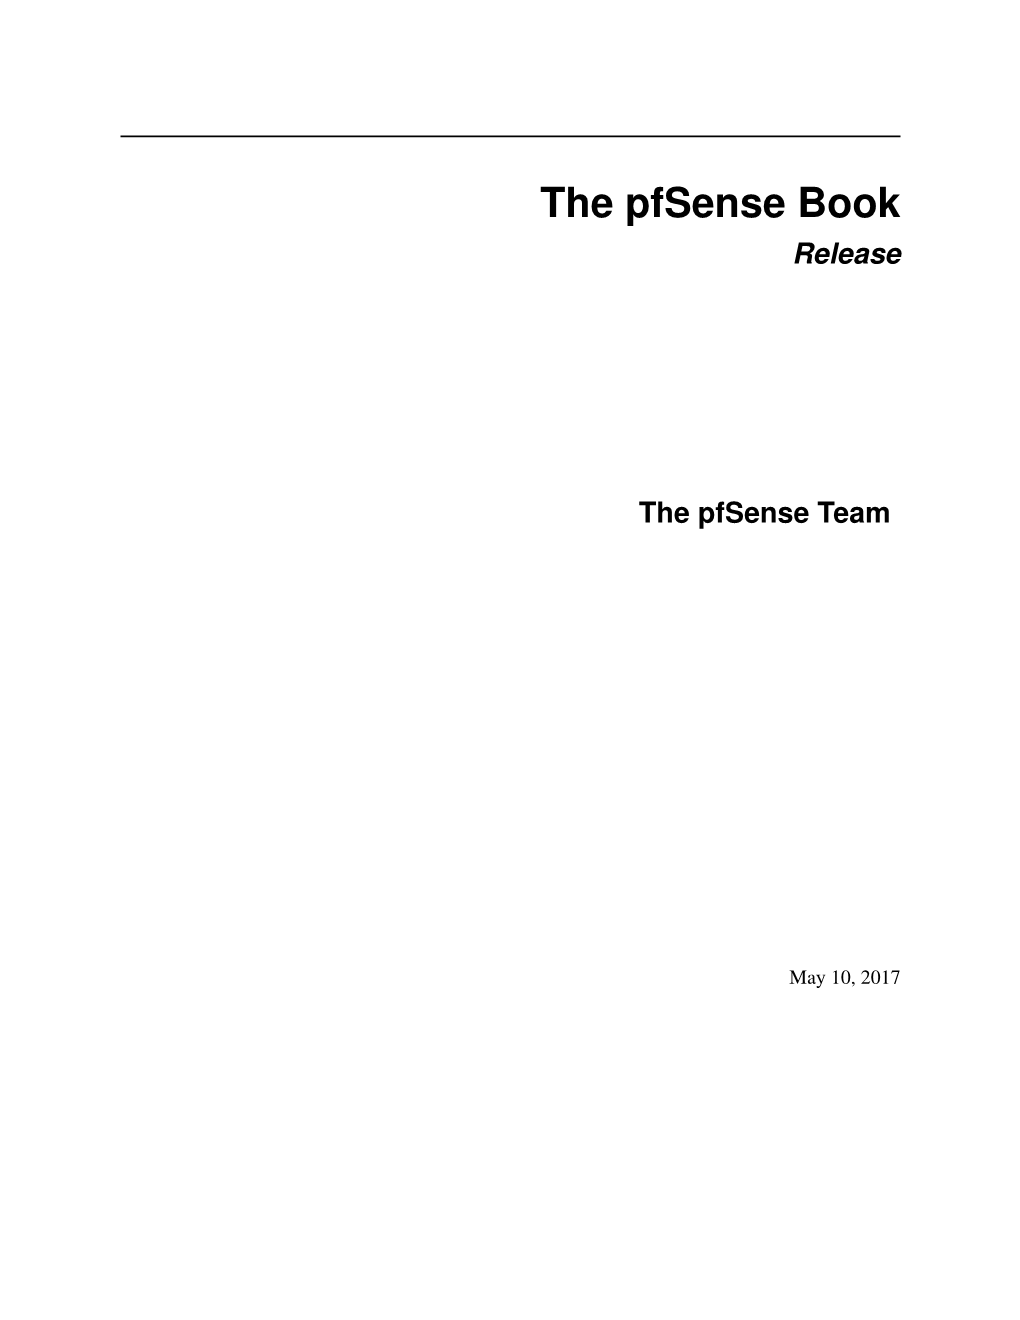 The Pfsense Book Release